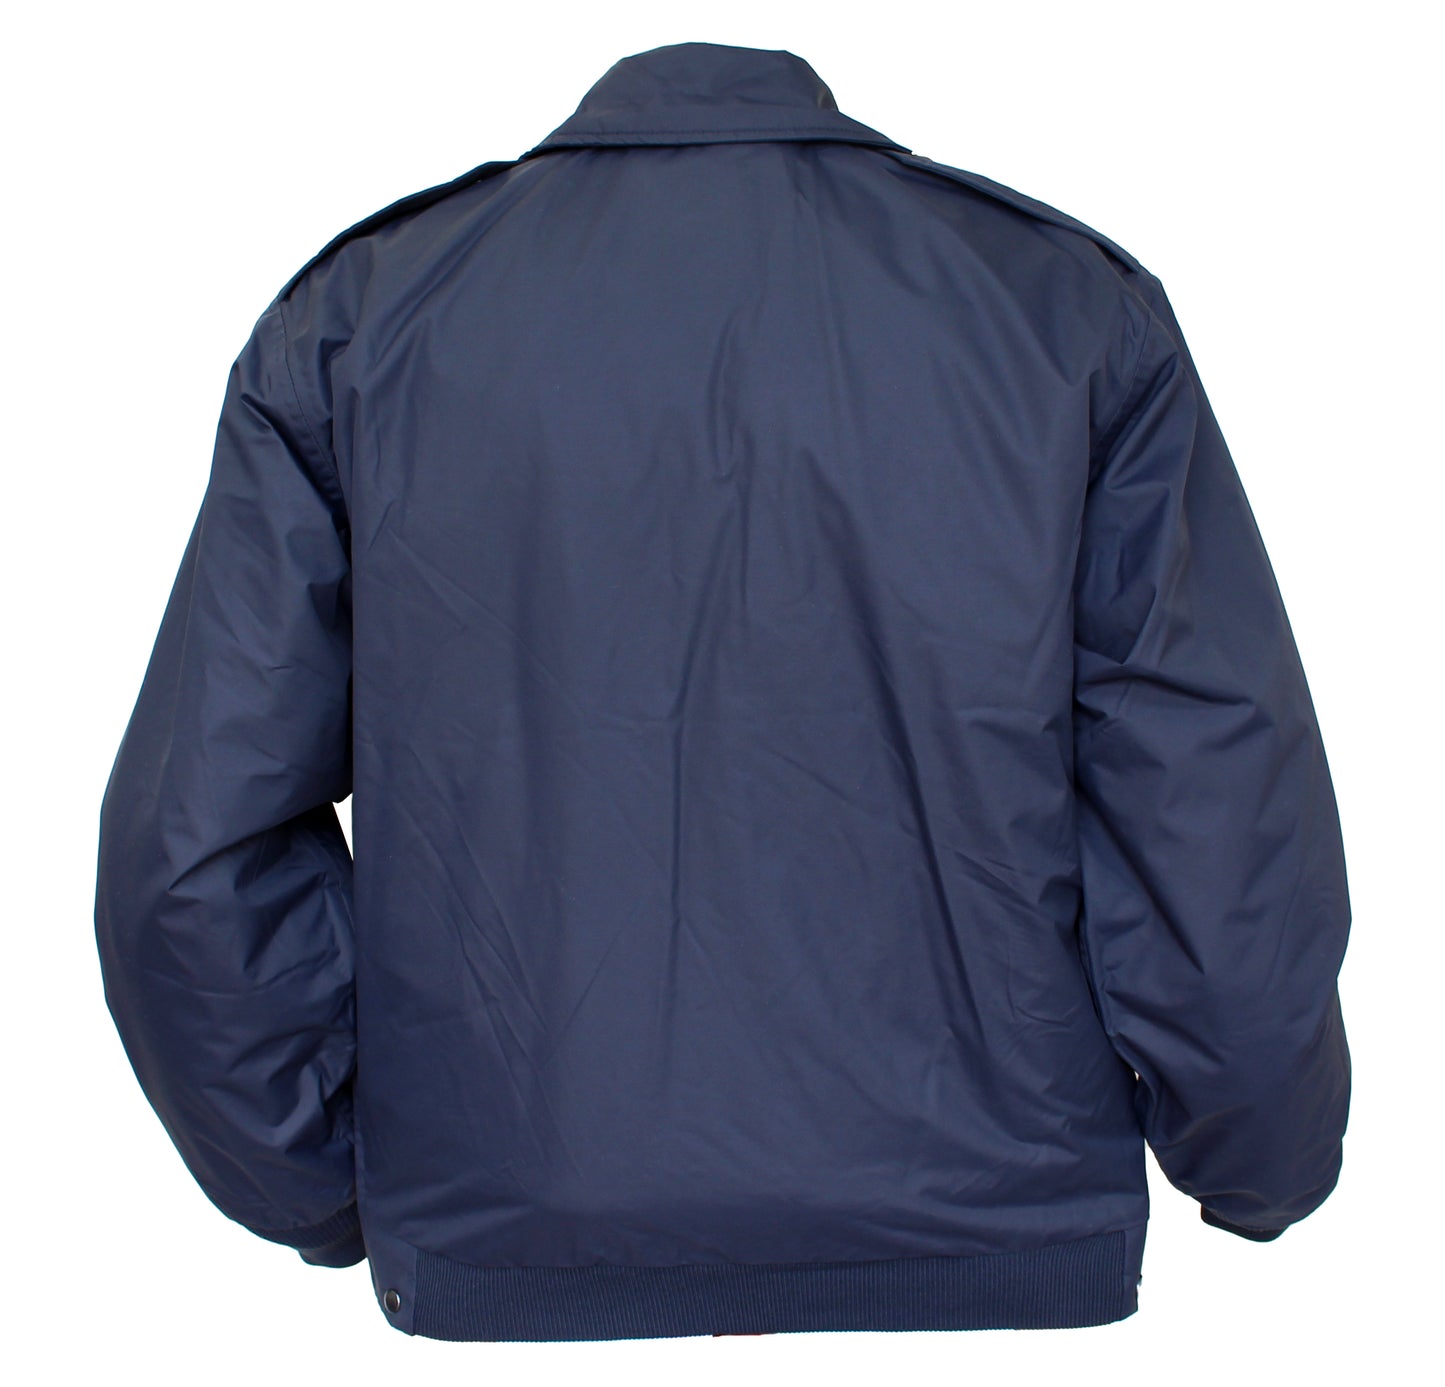 Solar 1 Clothing NYPD Police Nylon Duty Jacket NY01